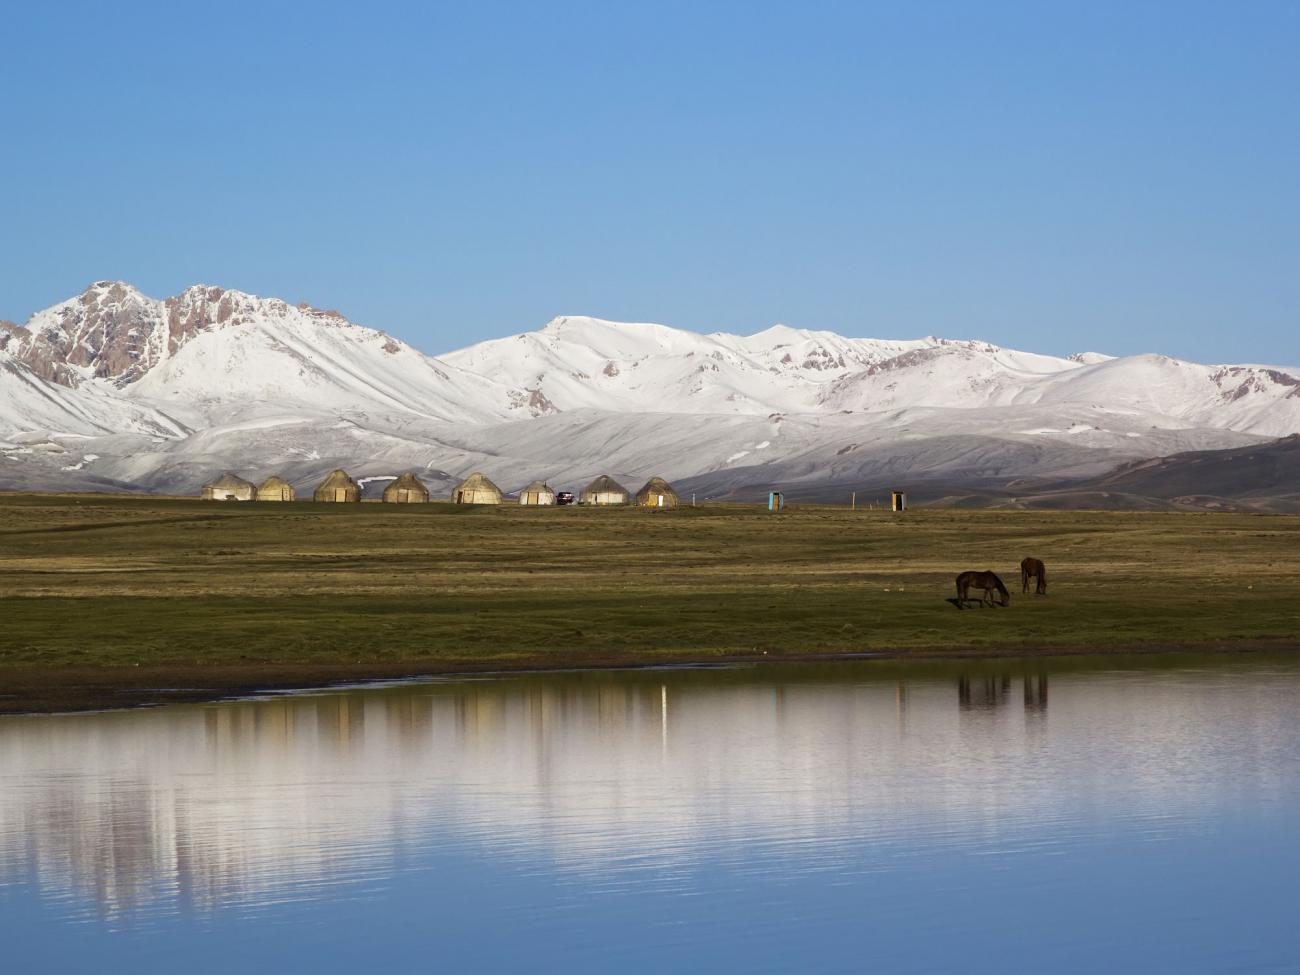 Places to visit in Kyrgyzstan? Lake Sol Kul